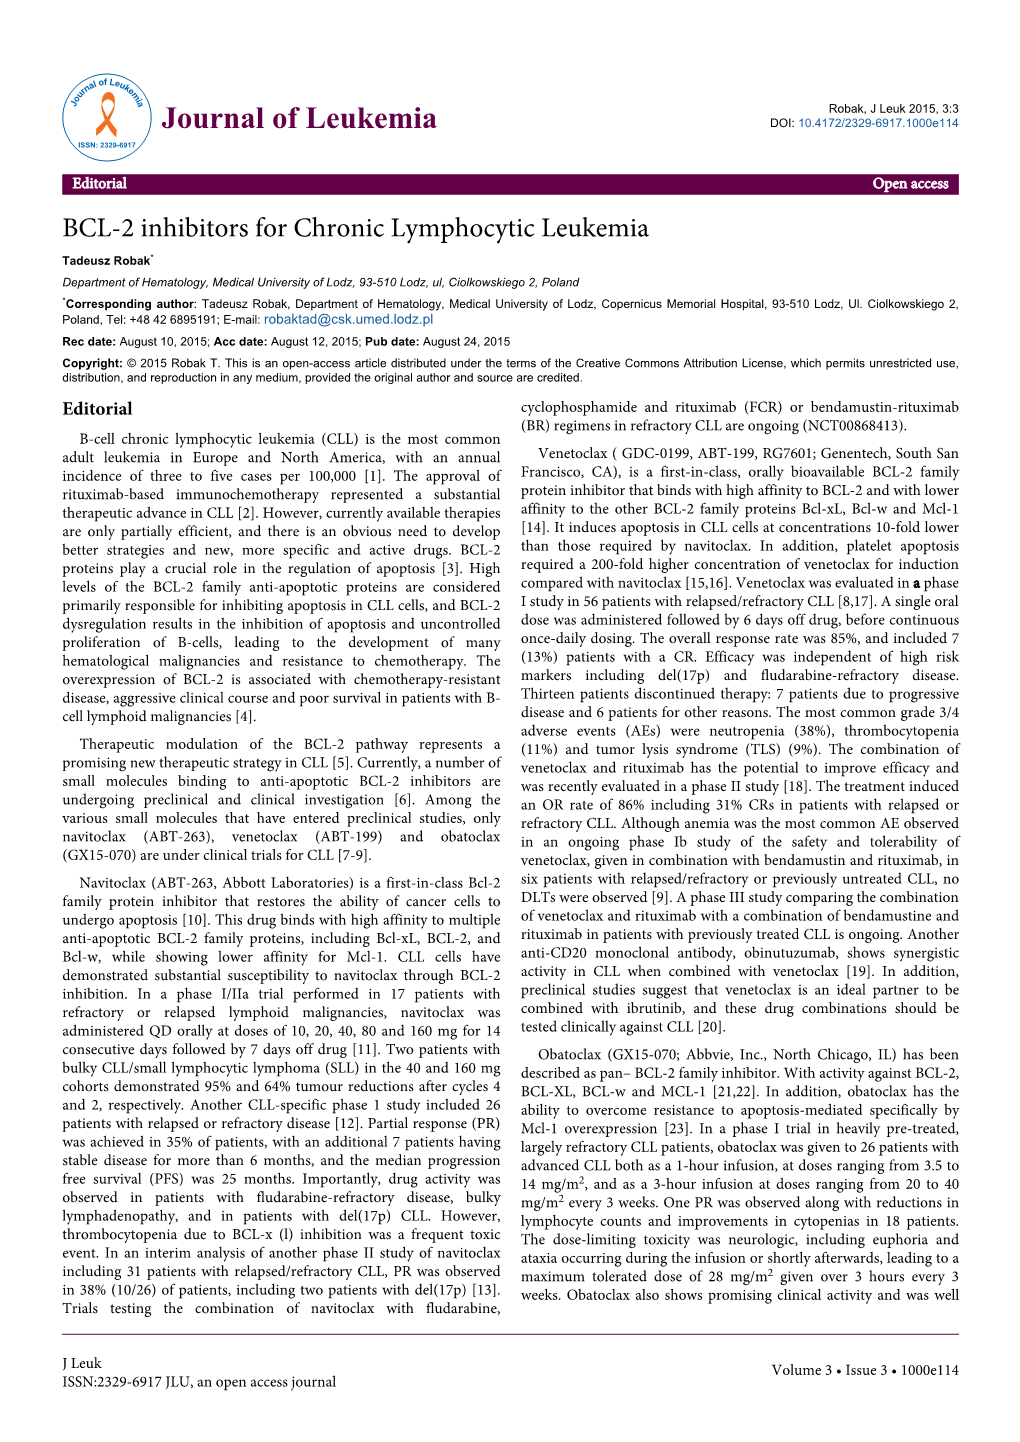 BCL-2 Inhibitors for Chronic Lymphocytic Leukemia